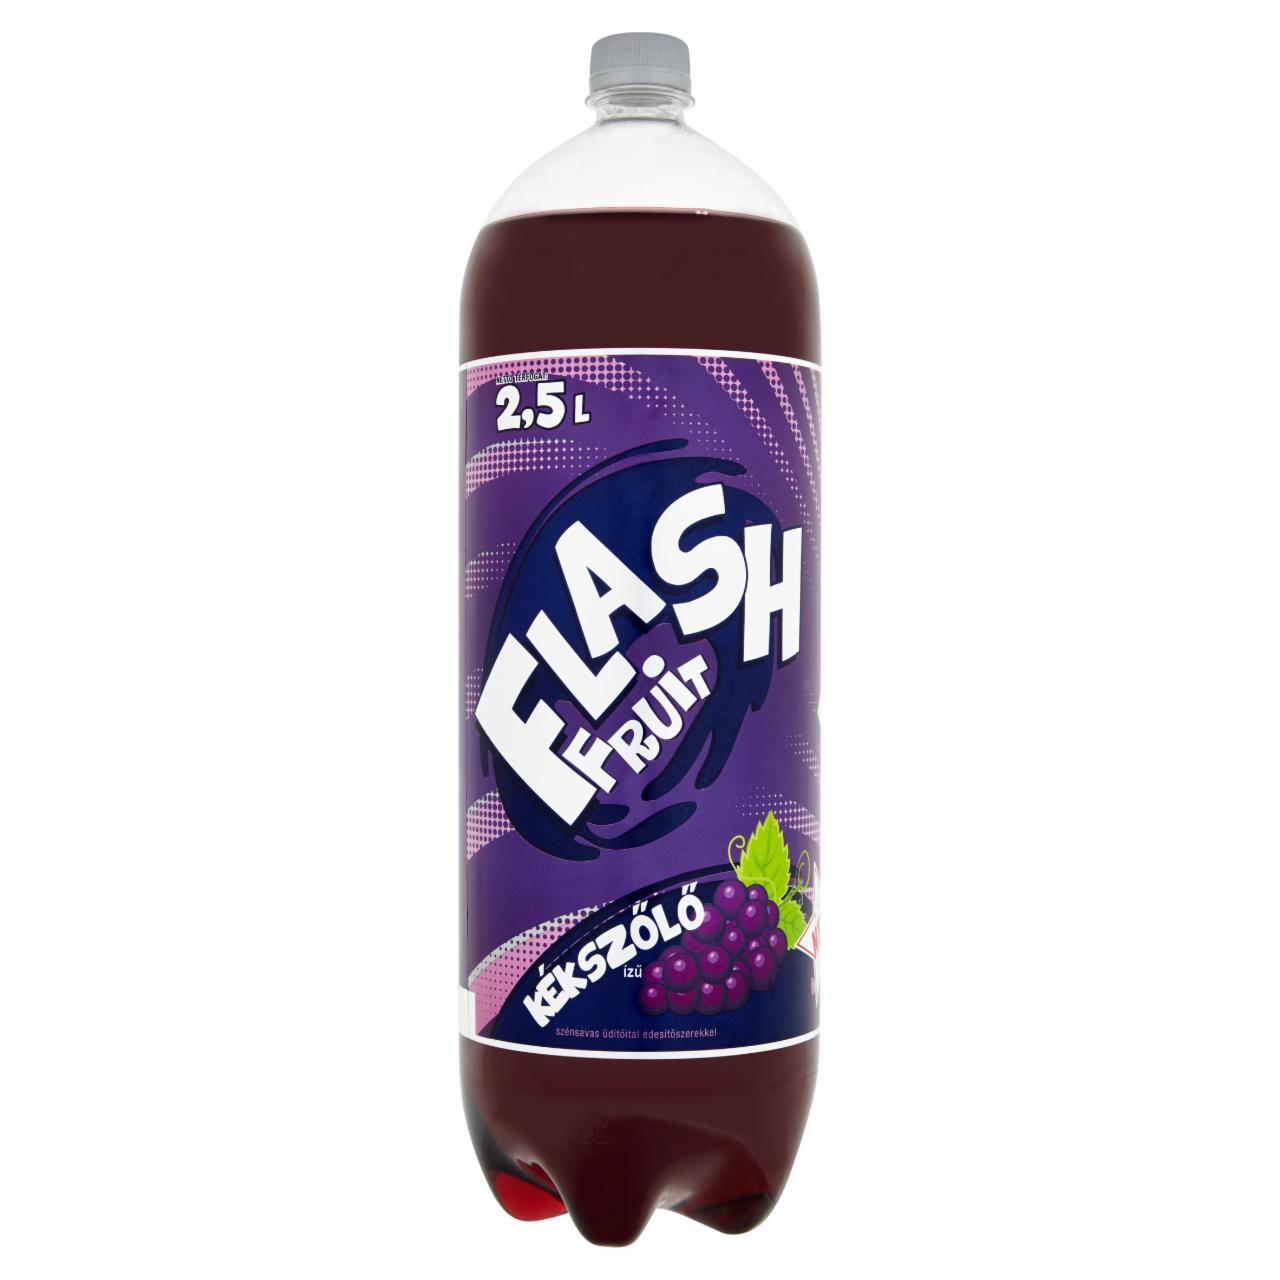 Képek - Flash Fruit kékszőlő ízű üdítőital 2,5 l